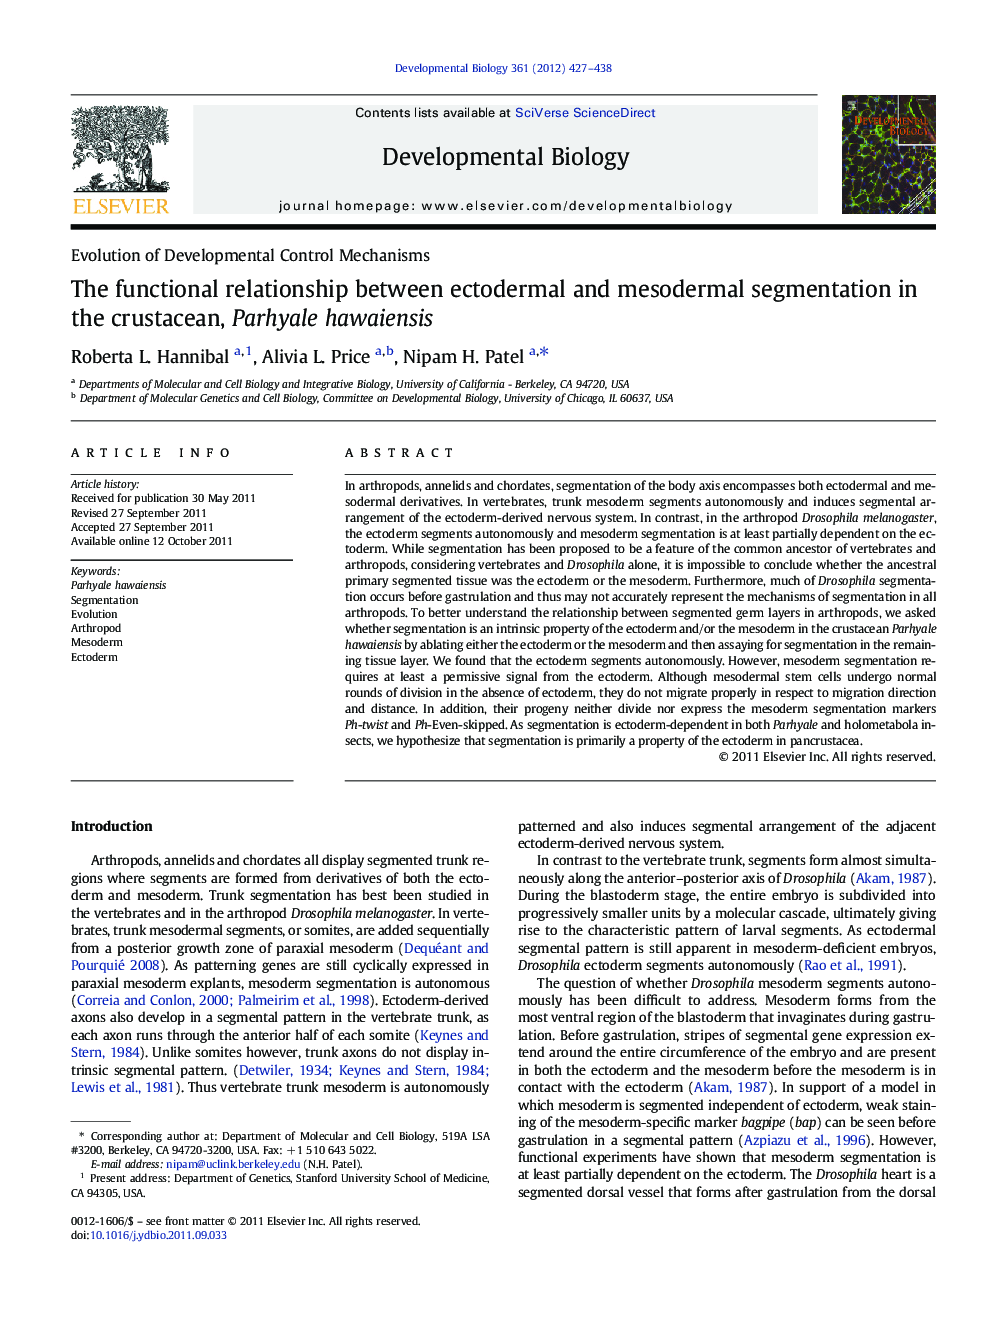 The functional relationship between ectodermal and mesodermal segmentation in the crustacean, Parhyale hawaiensis